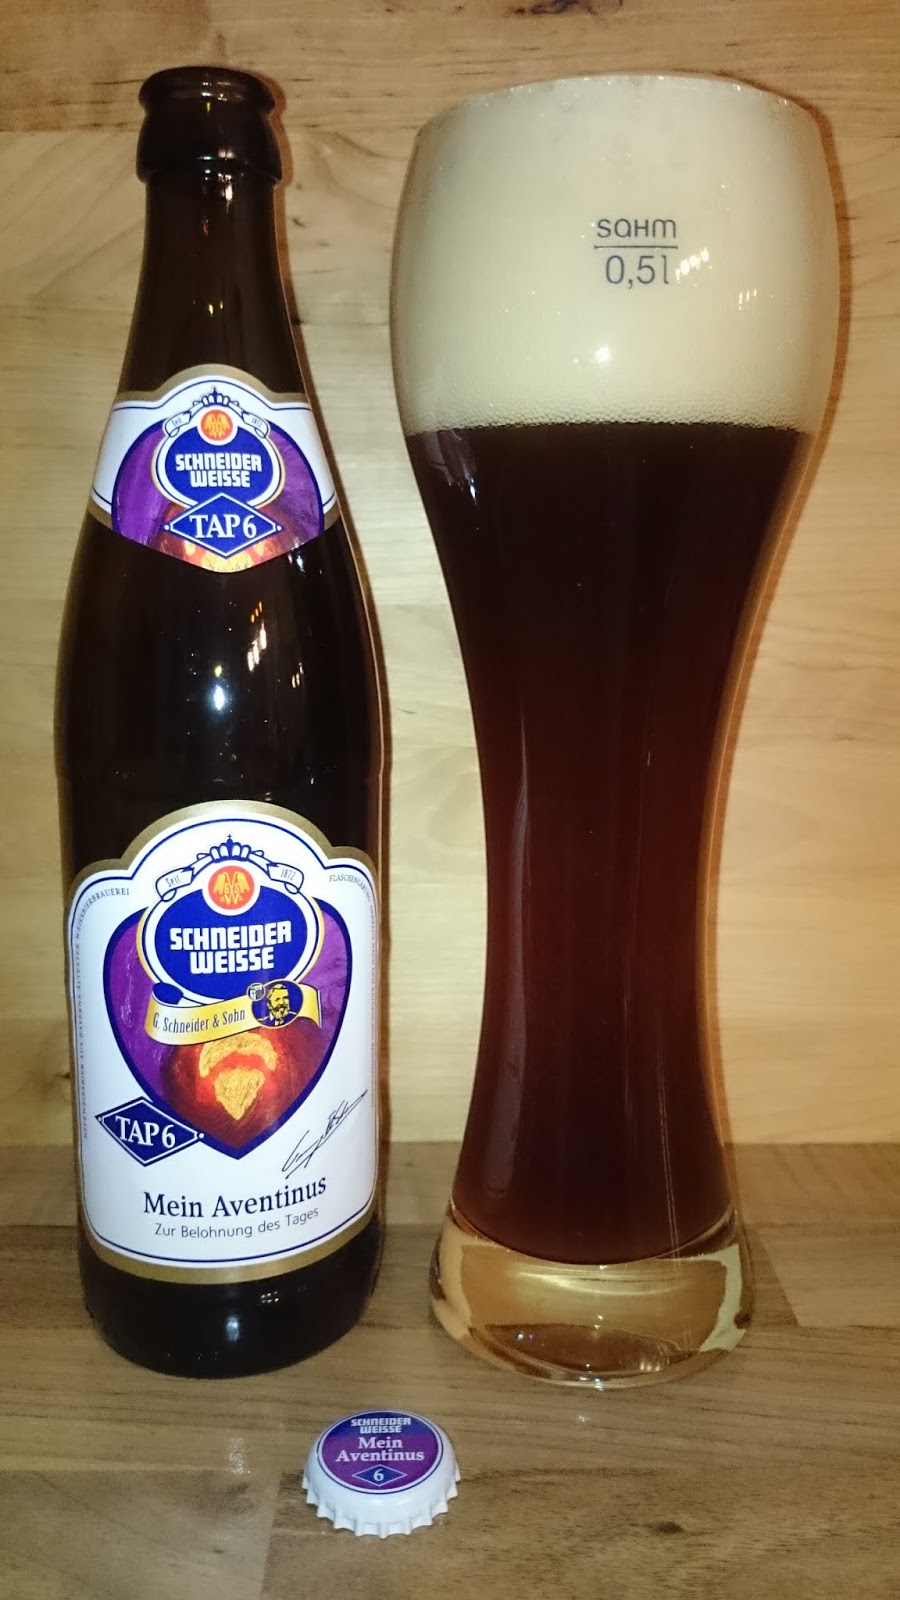 Beer Atlas Schneider Weisse TAP 6 Mein Aventinus